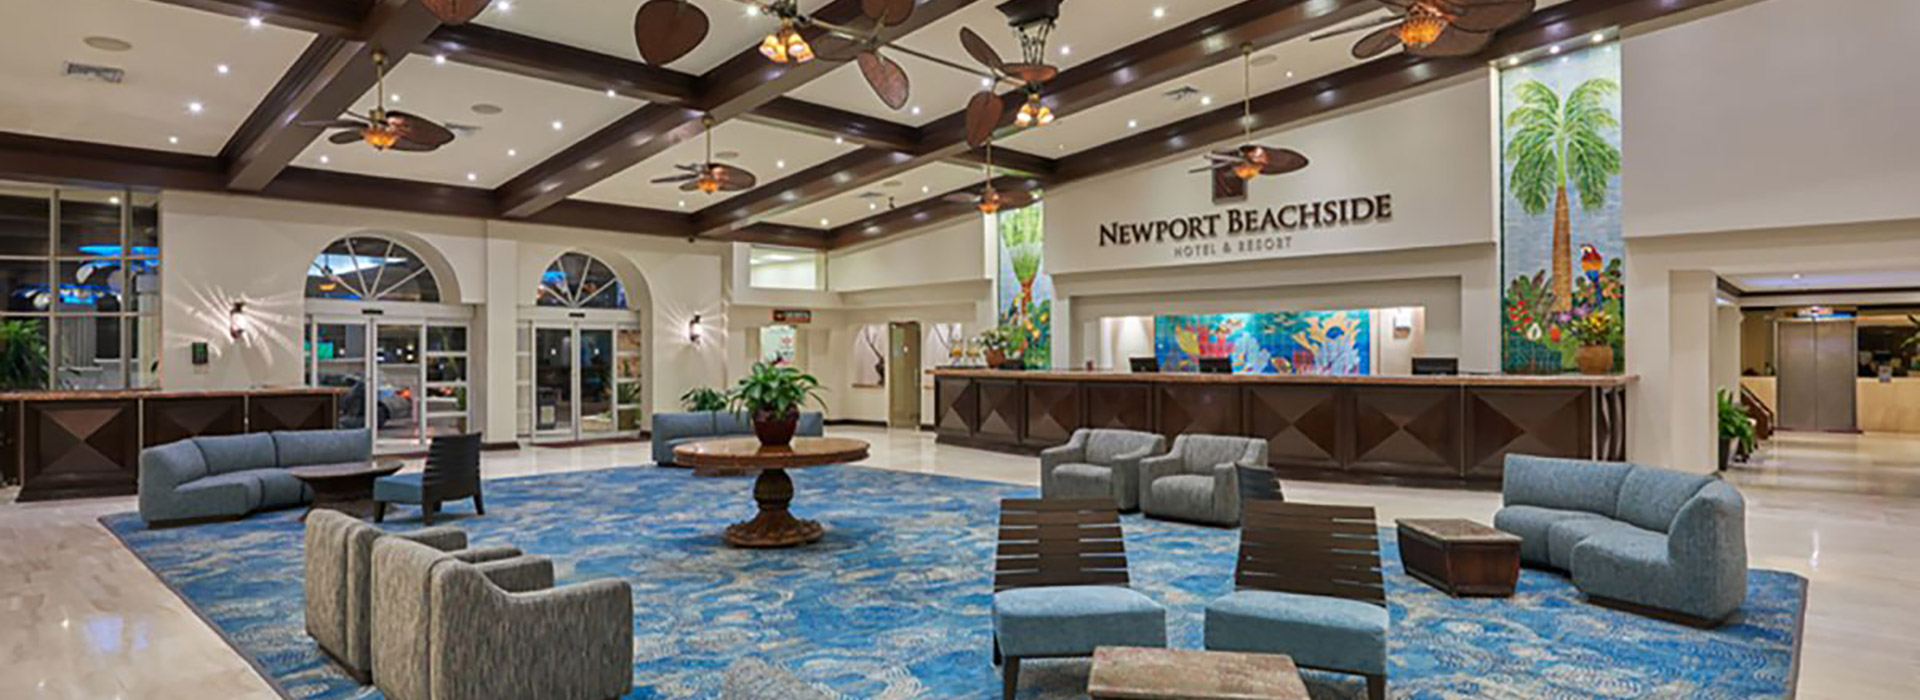 Newport Beachside Hotel & Resort Lobby